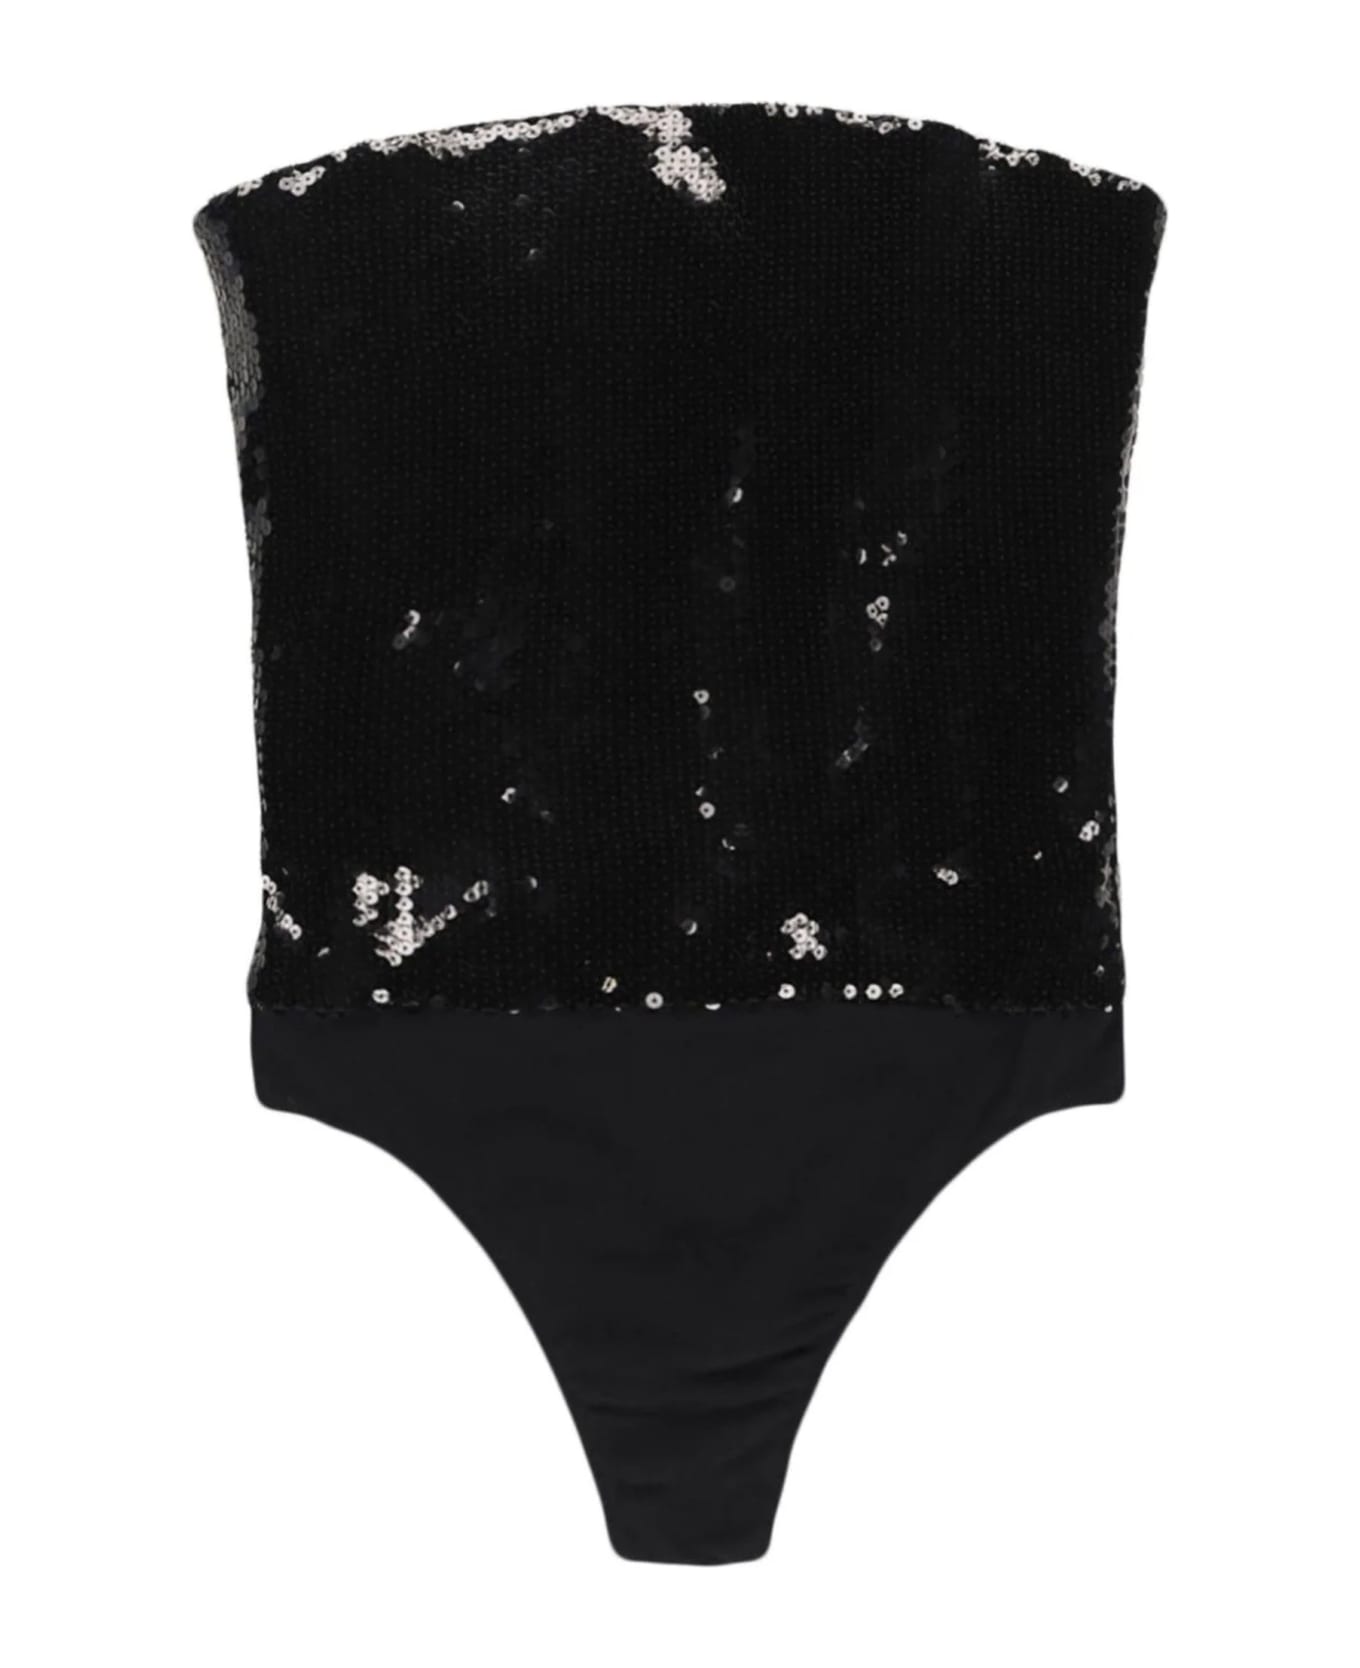 Alexandre Vauthier Black Strapless Bodysuit - Black